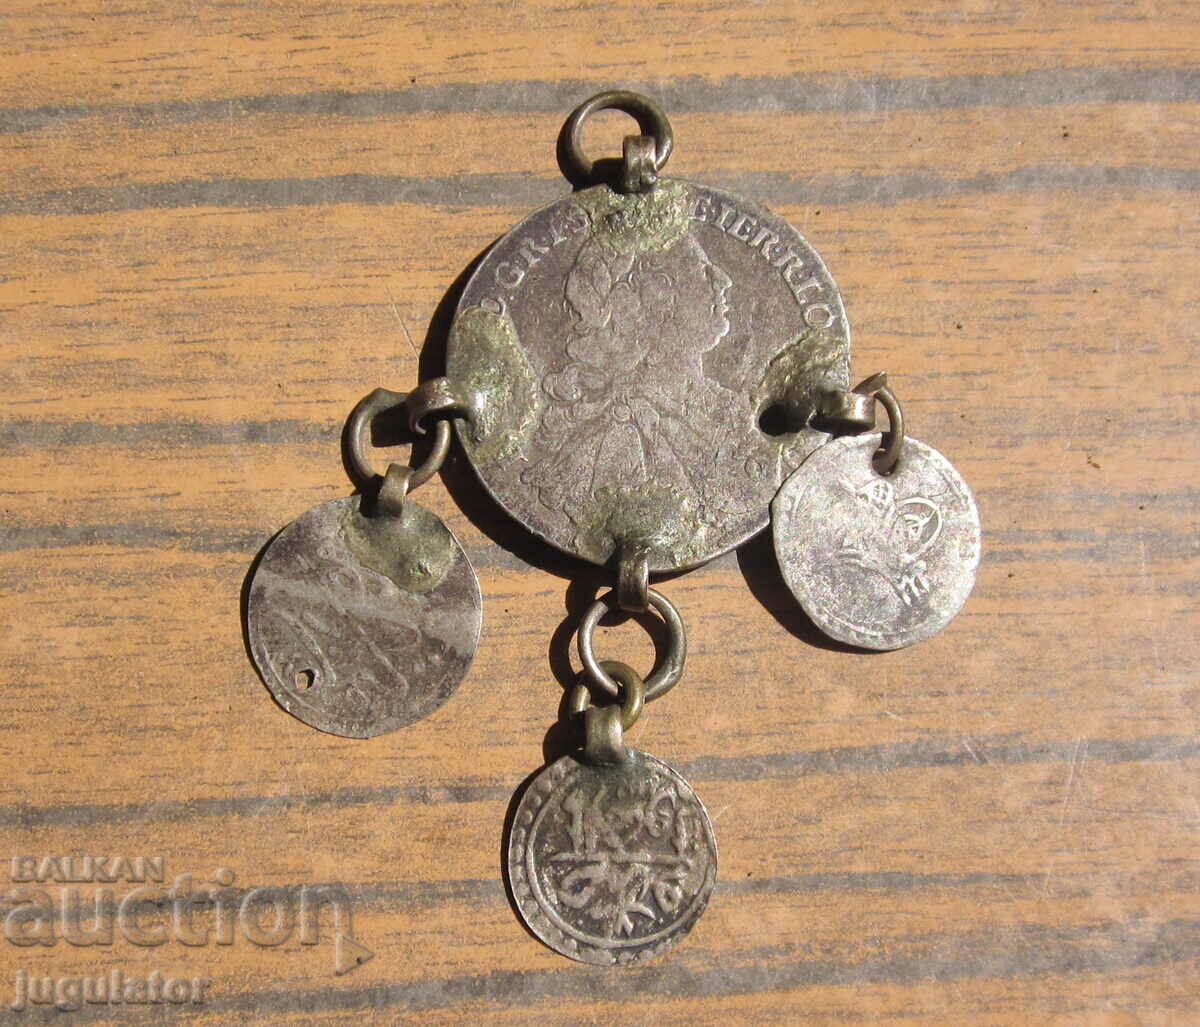 bijuterii populare din argint etnografice vechi bulgare